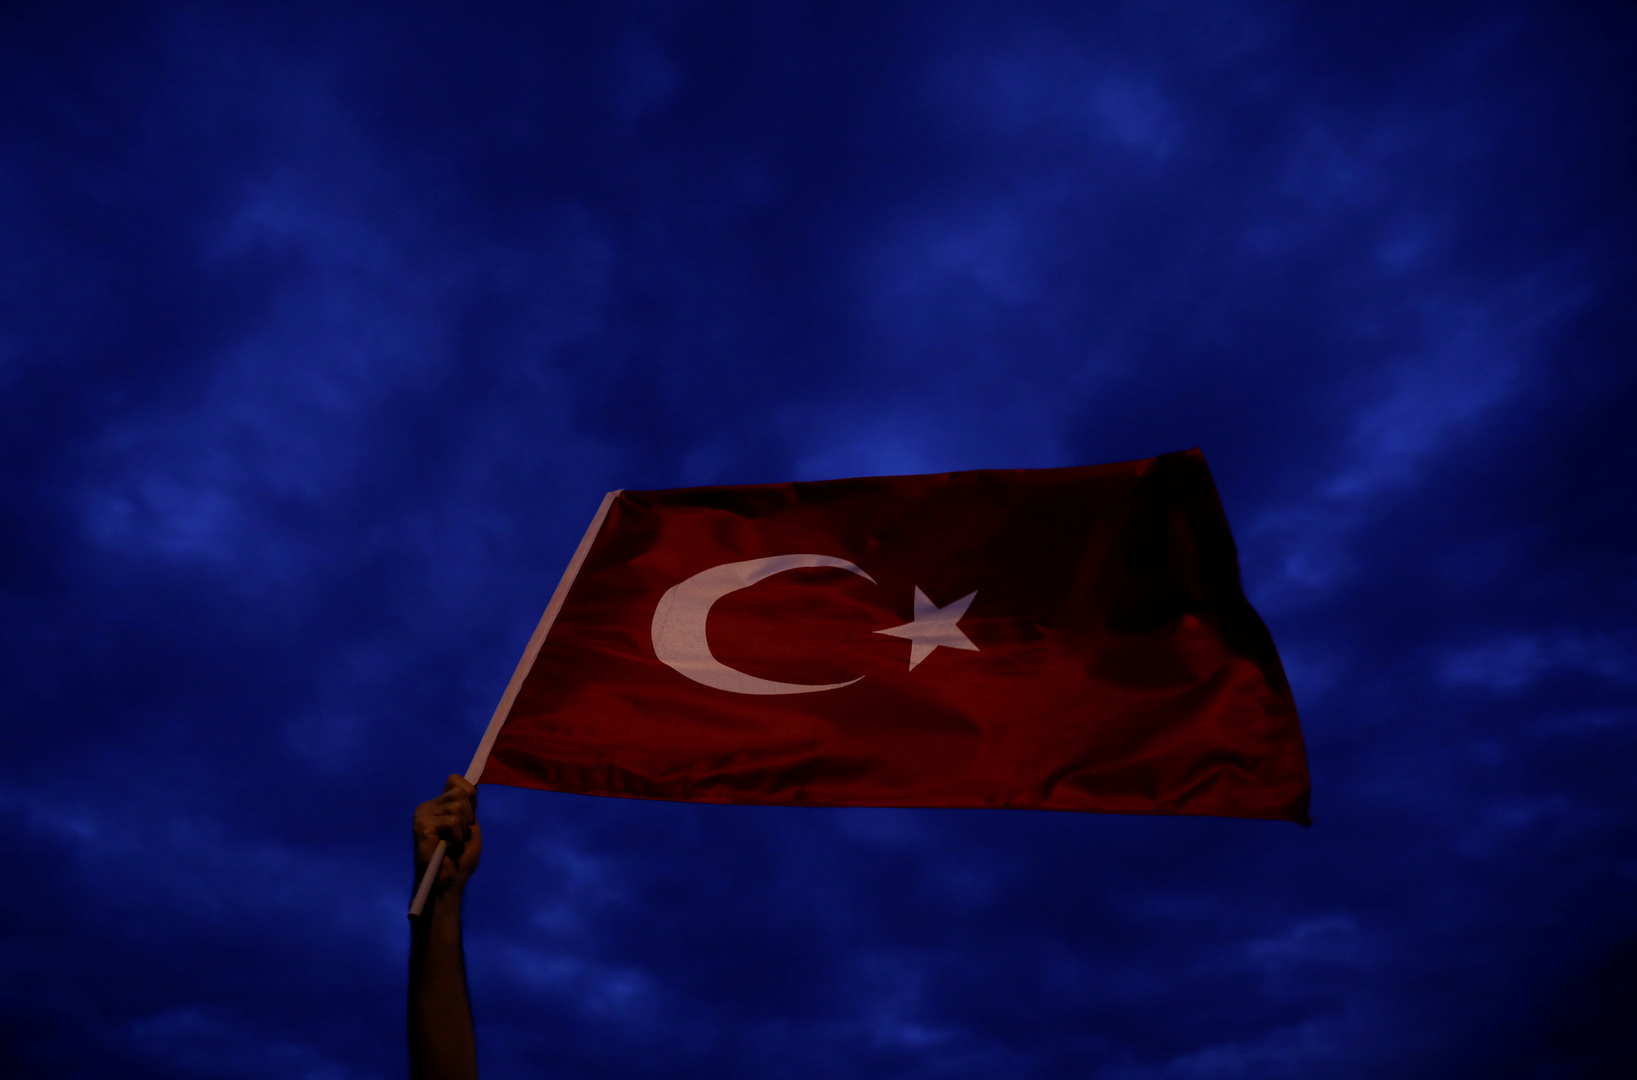 تركيا.. ترحيل 5 مواطنين عرب للاشتباه بانتمائهم لـ"داعش" والقبض على عربي "انتسب" للتنظيم